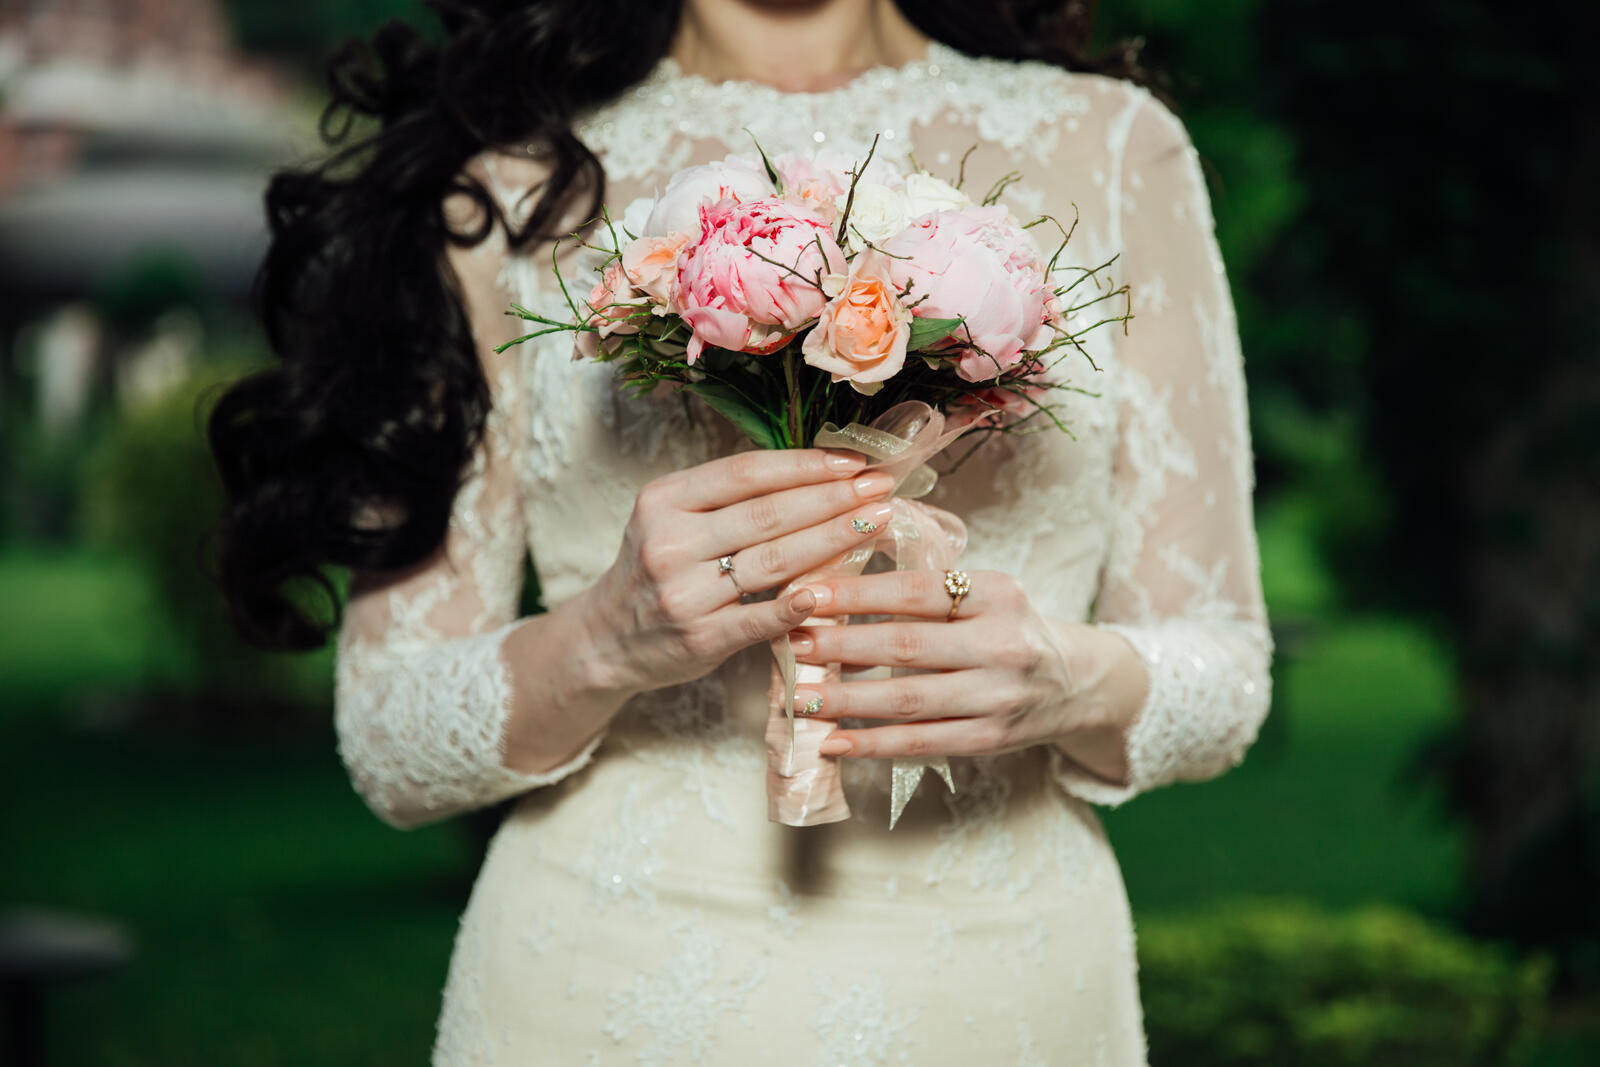 Бесплатное фото Невеста на свадебной церемонии с букетом цветов